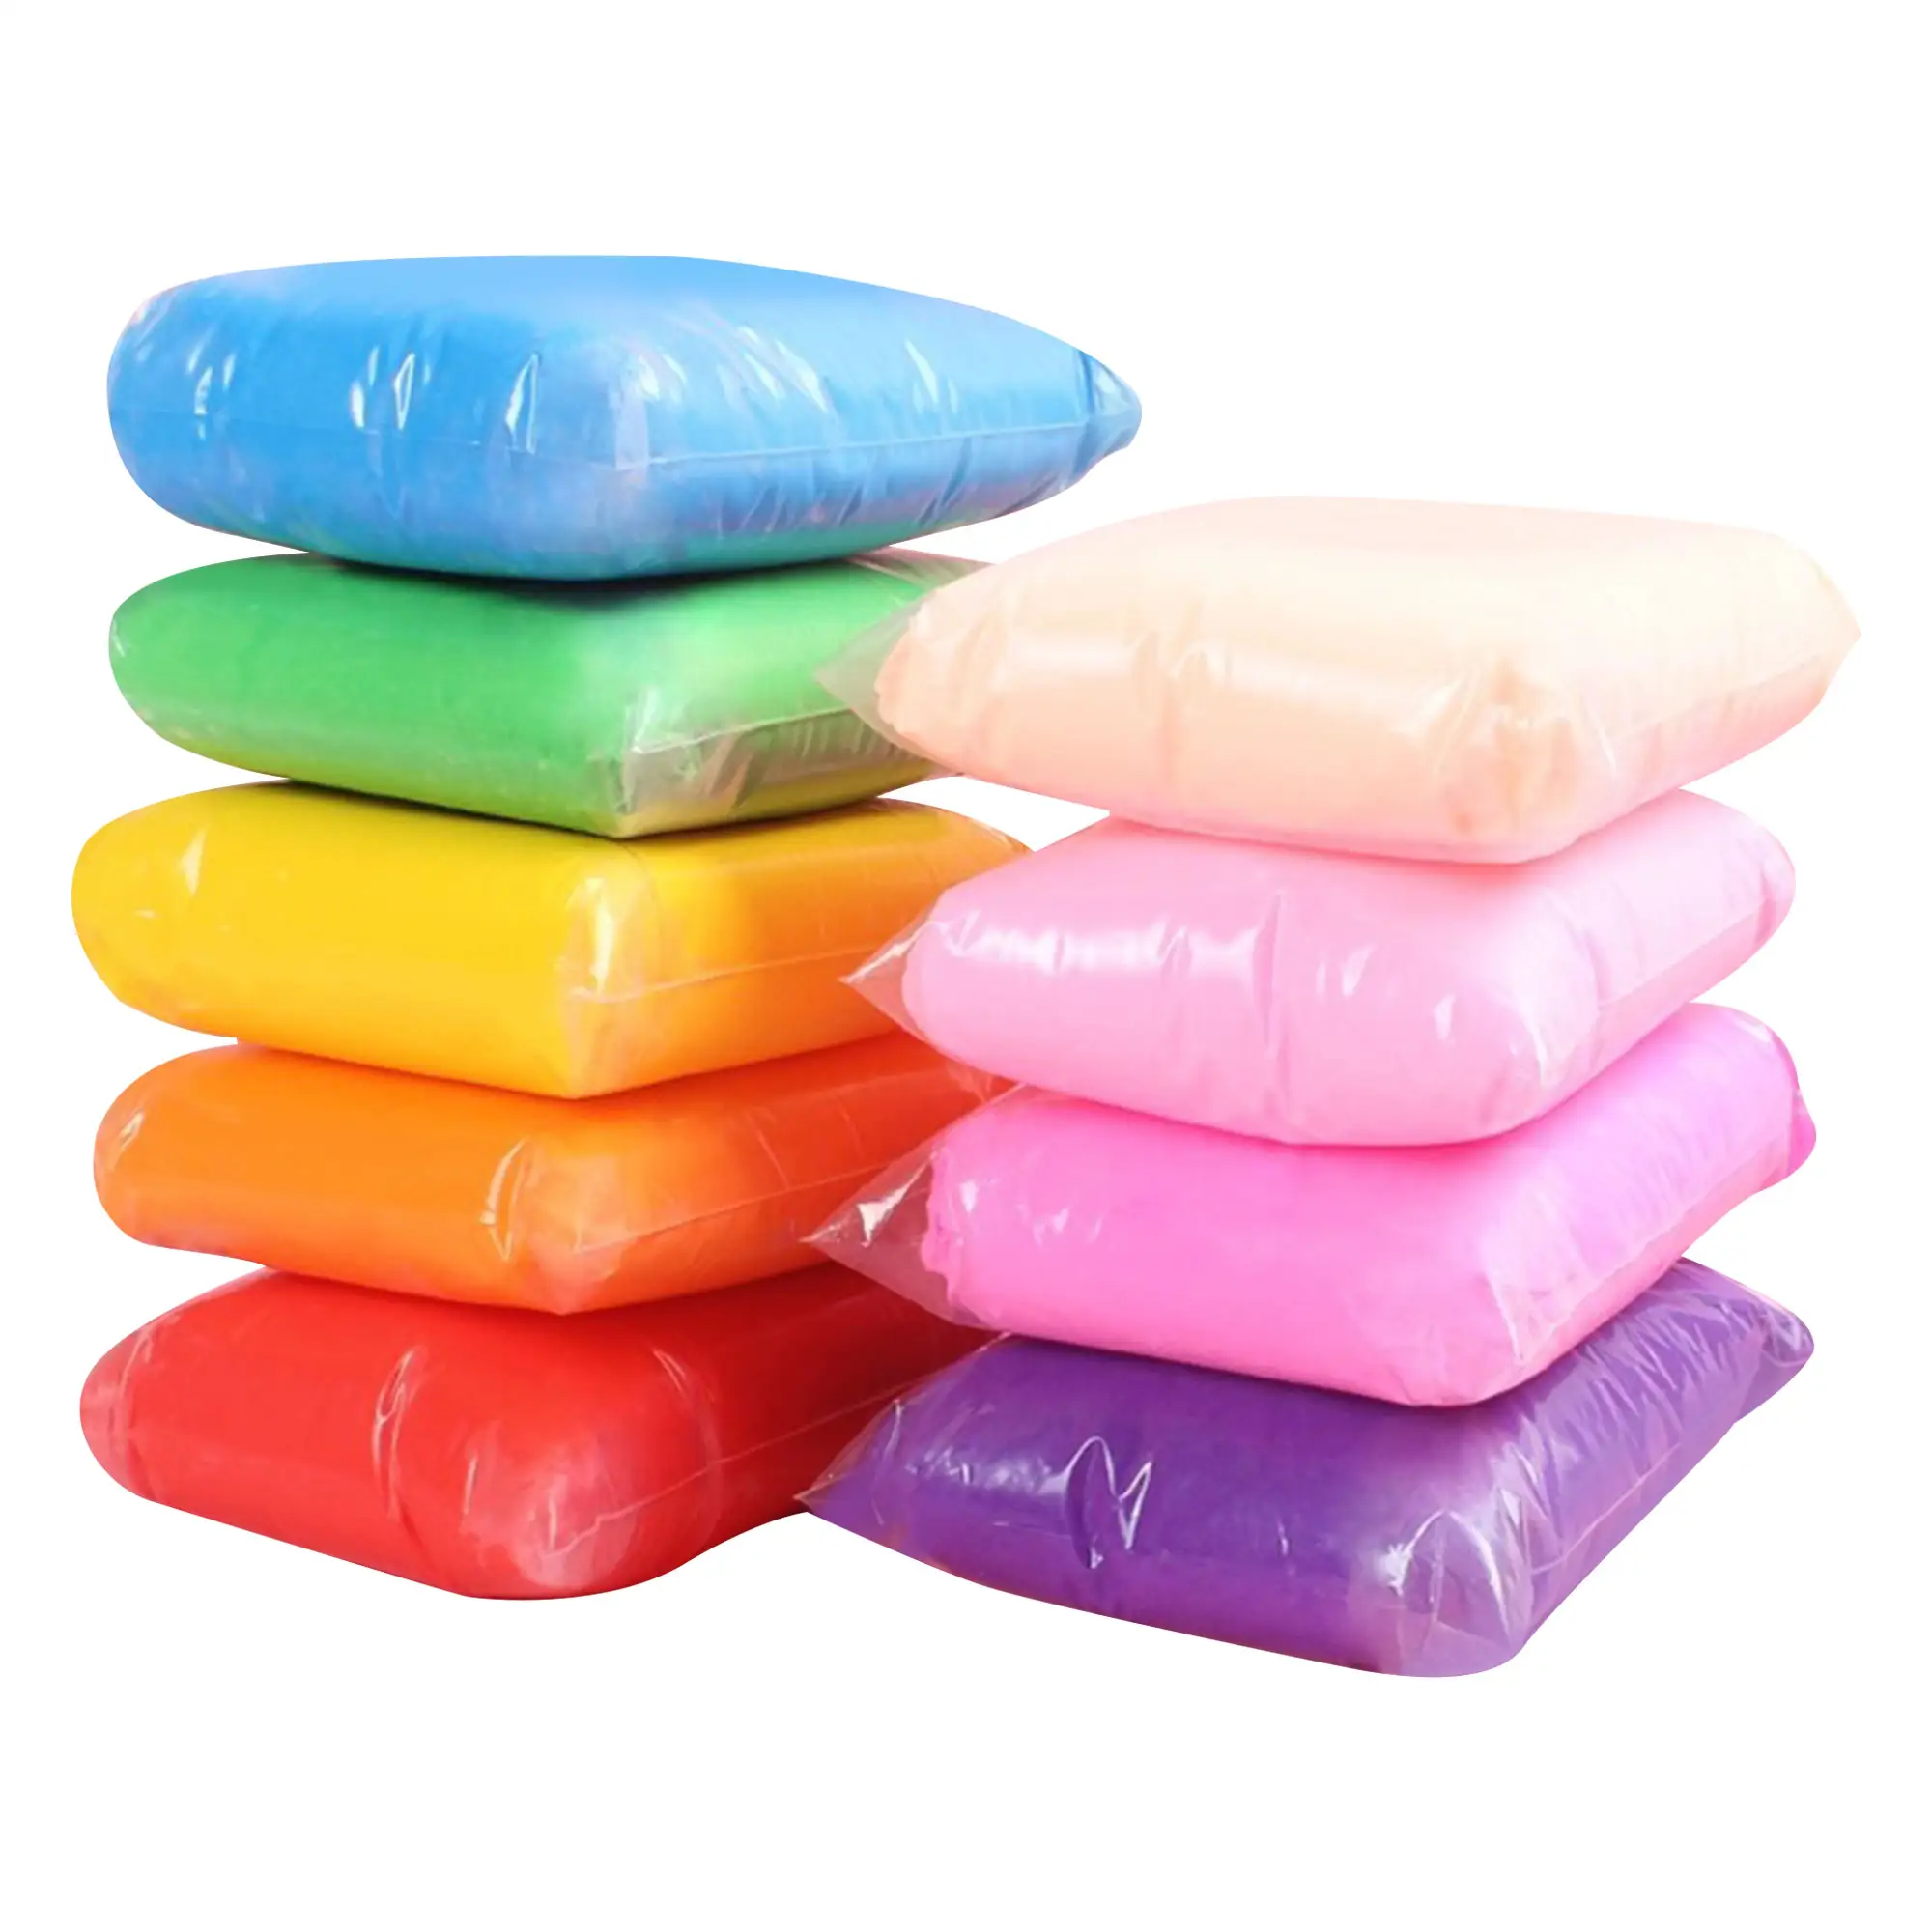 A buon mercato educativo Playdough polimero argilla Set 12 colori per bambini plastilina modellazione giocattoli di pasta alla rinfusa